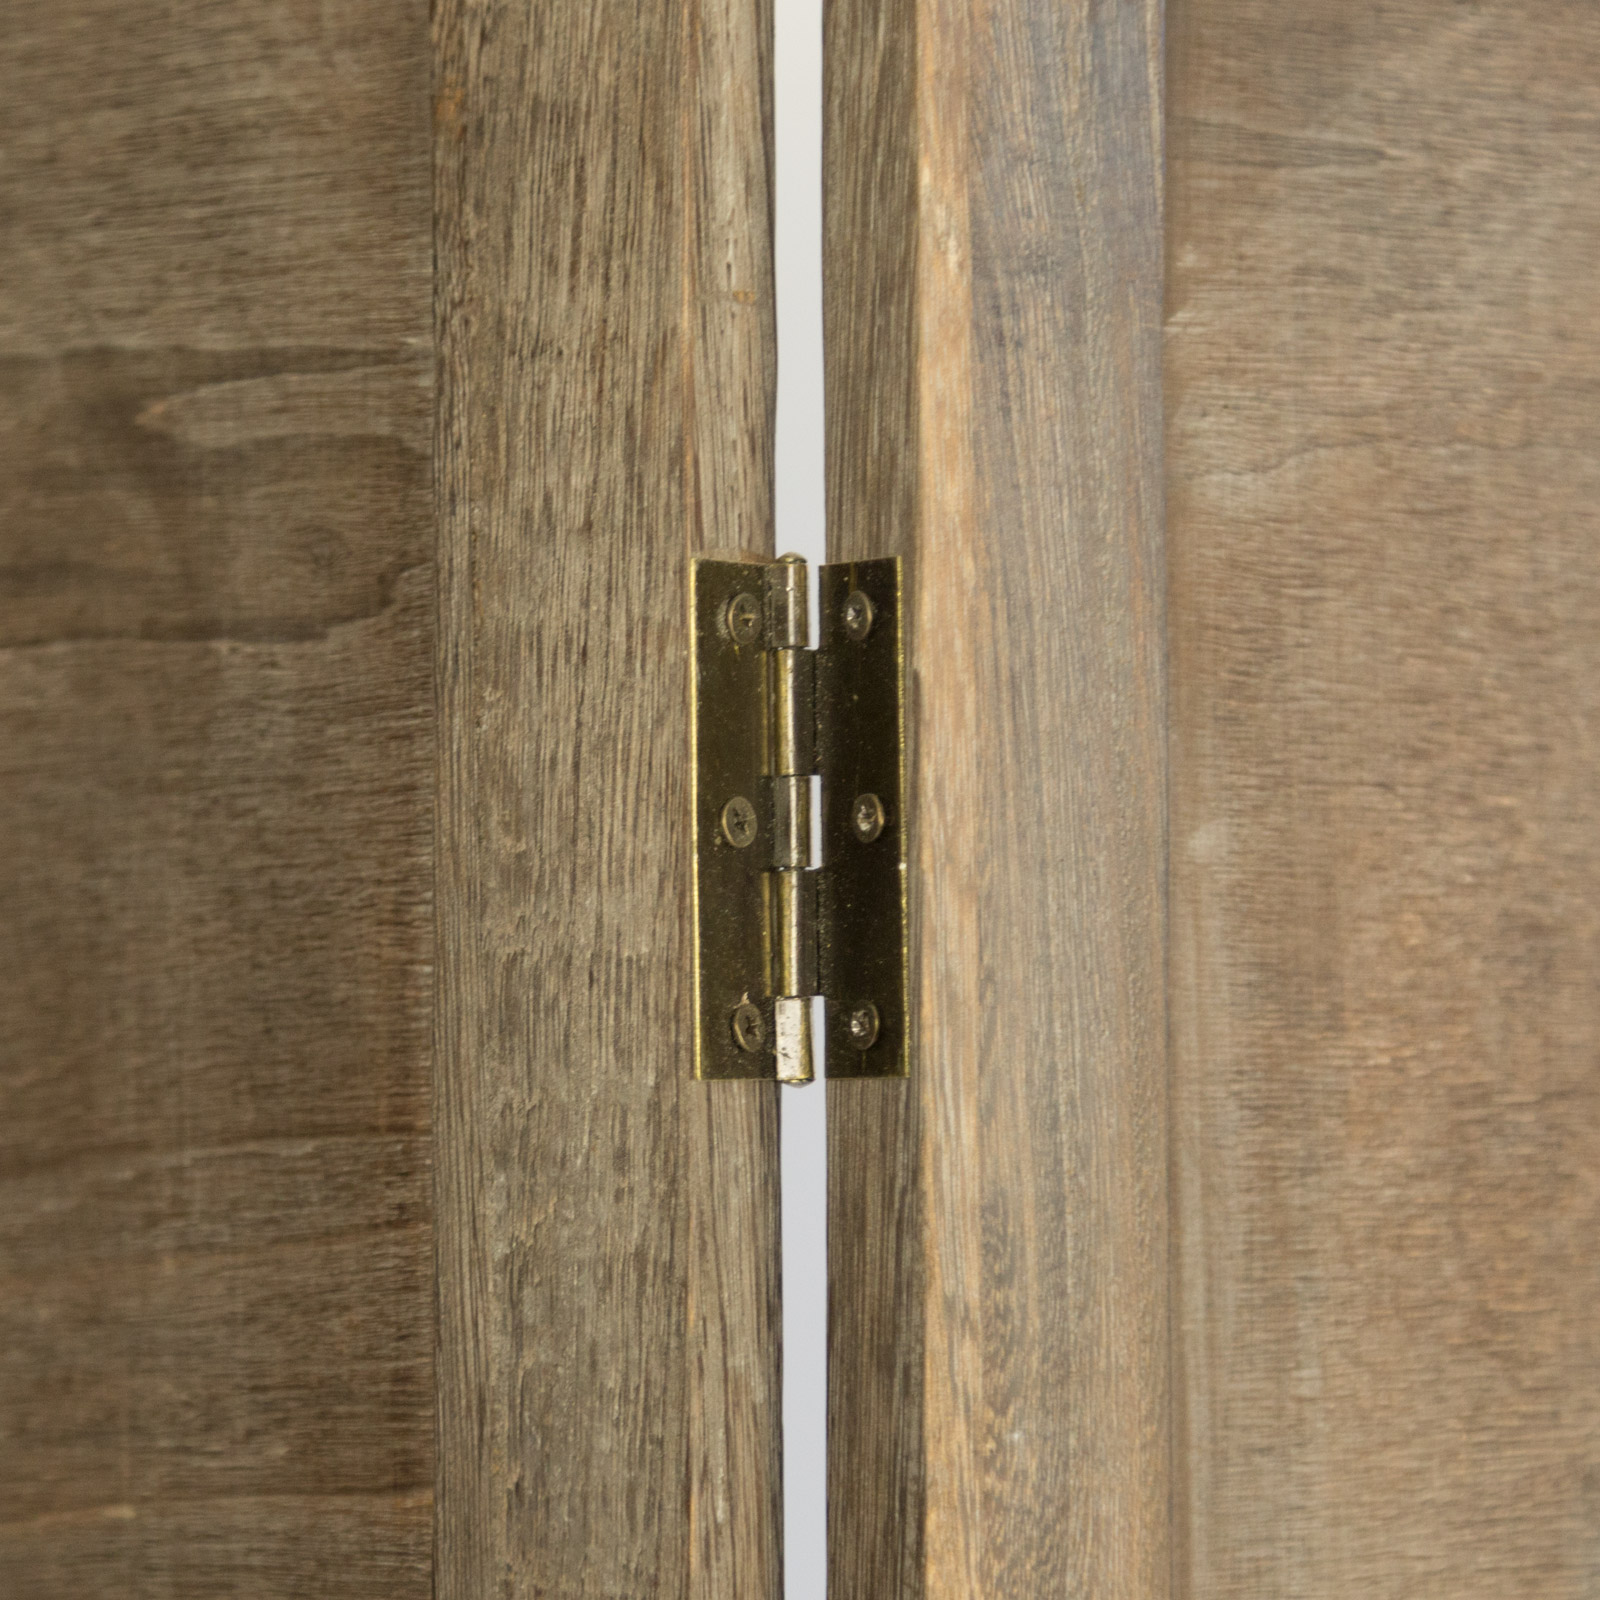 Paravent Raumteiler 4 teilig Holz Trennwand Sichtschutz Braun